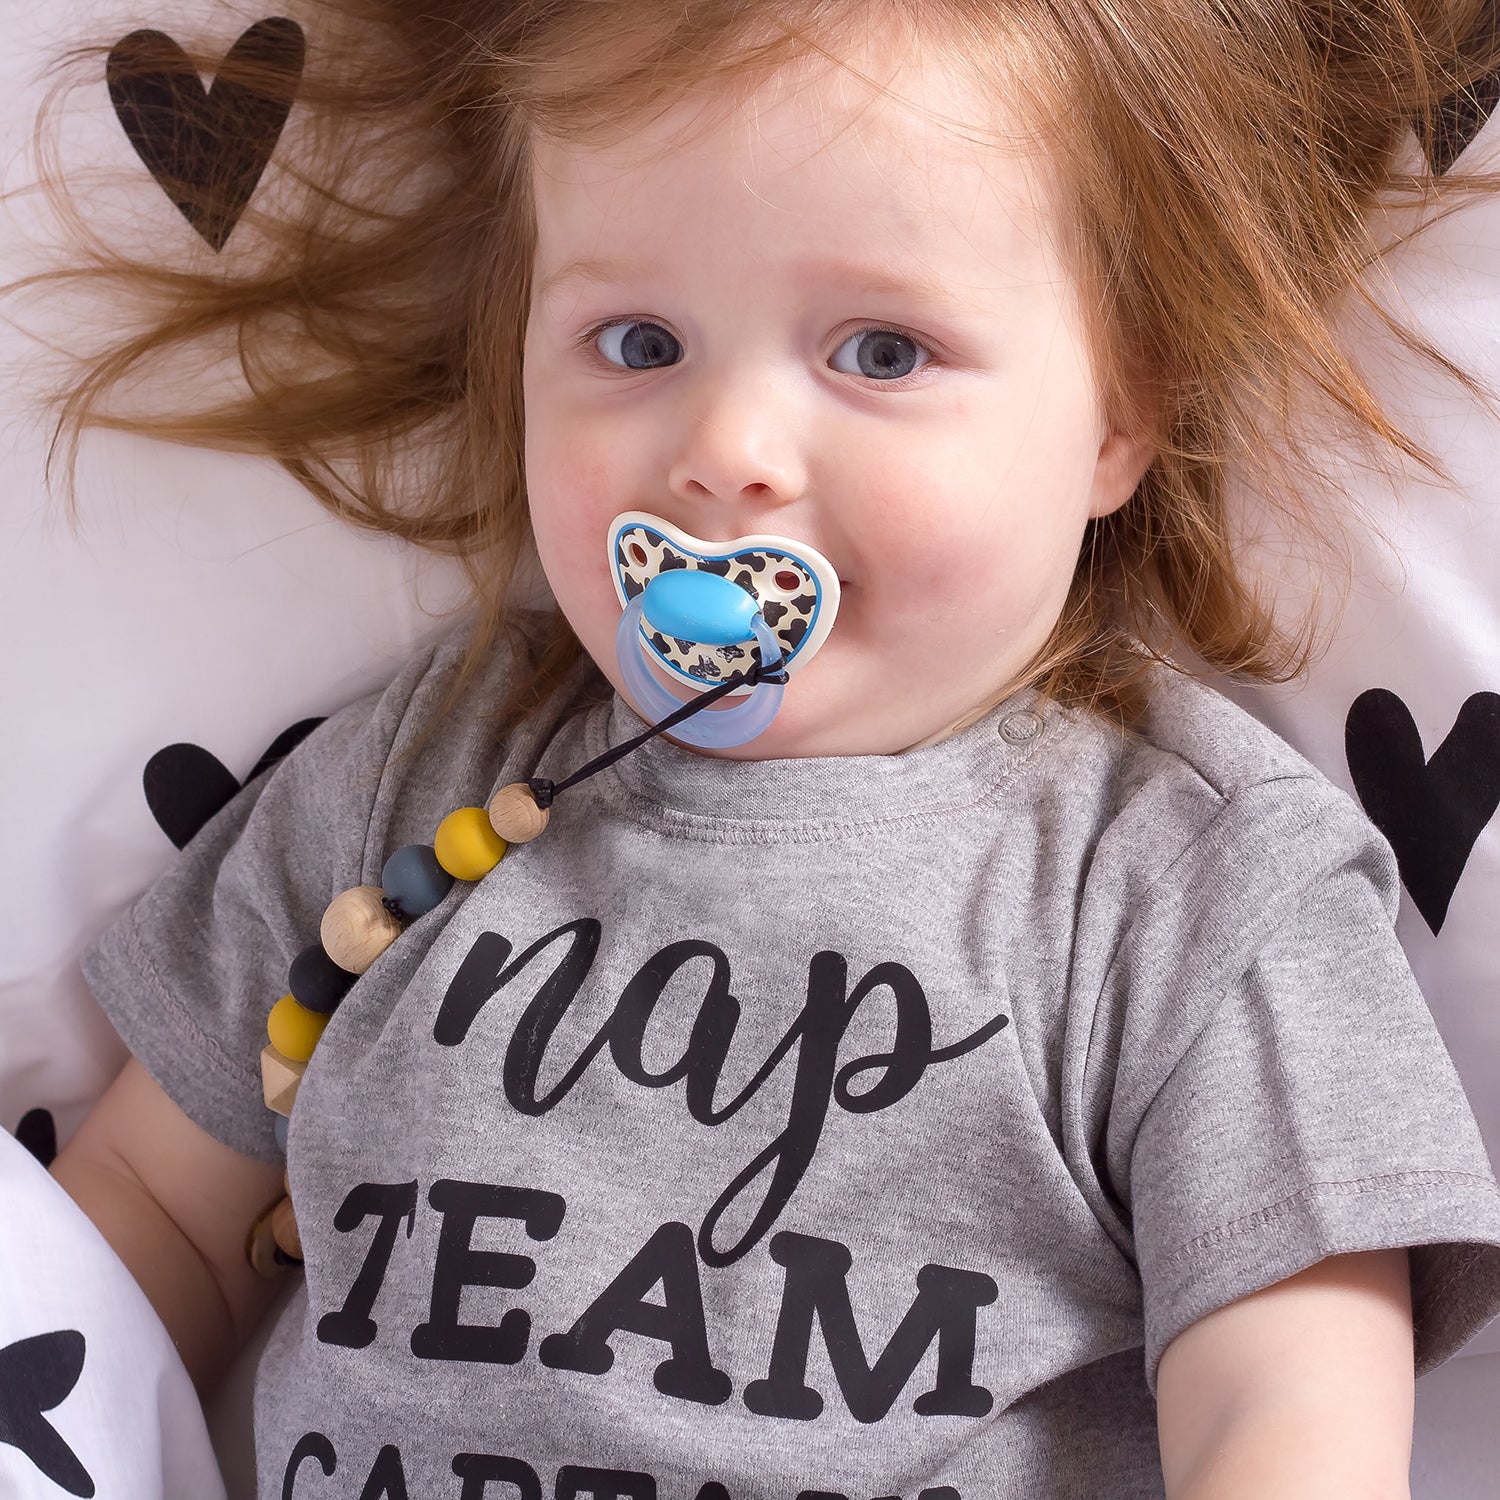 'Nap team captain' baby shirt met korte mouwen